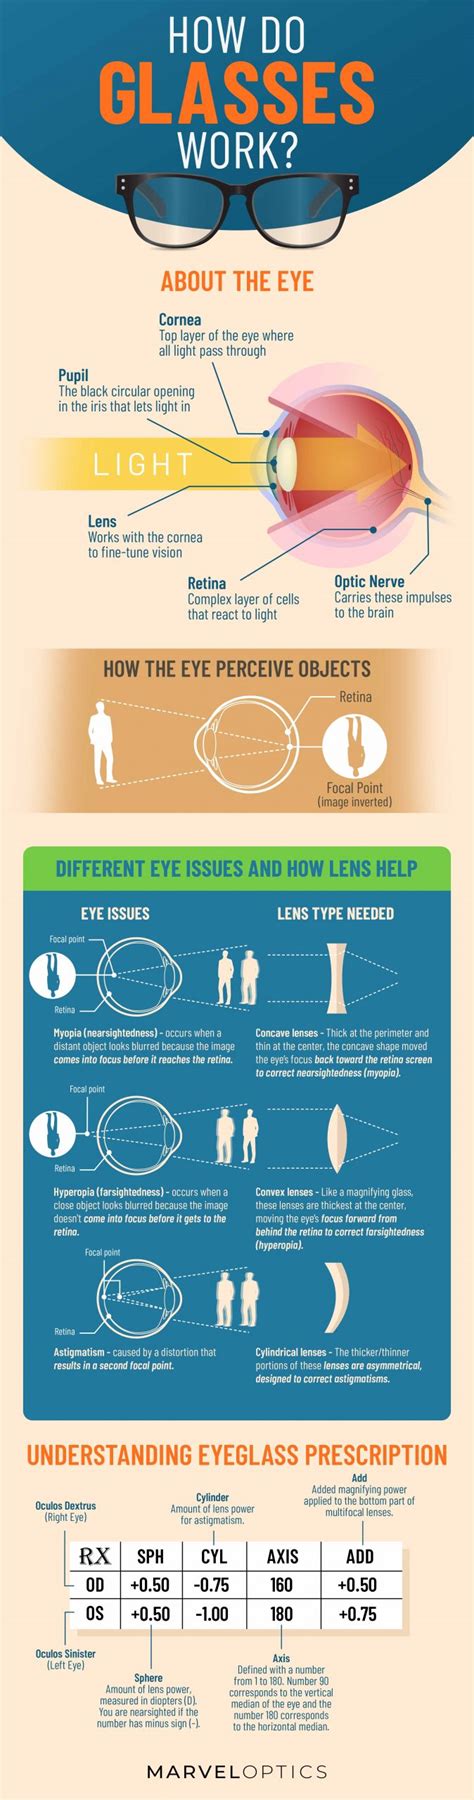 How Do Glasses Work Marvel Optics